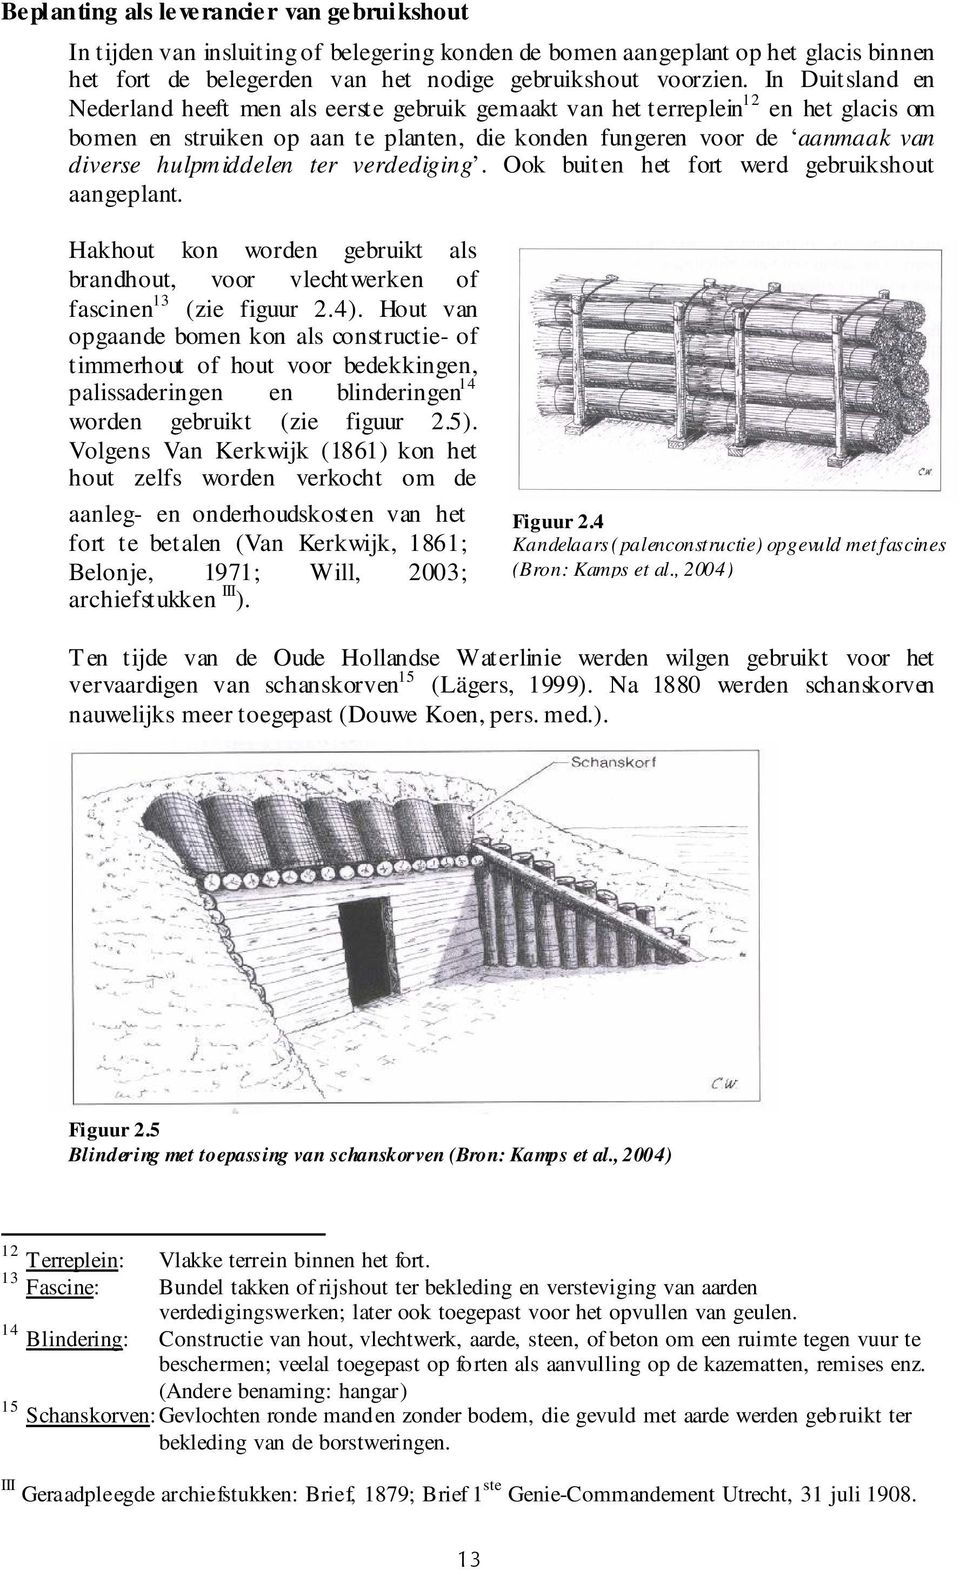 ter verdediging. Ook buiten het fort werd gebruikshout aangeplant. Hakhout kon worden gebruikt als brandhout, voor vlechtwerken of fascinen 13 (zie figuur 2.4).